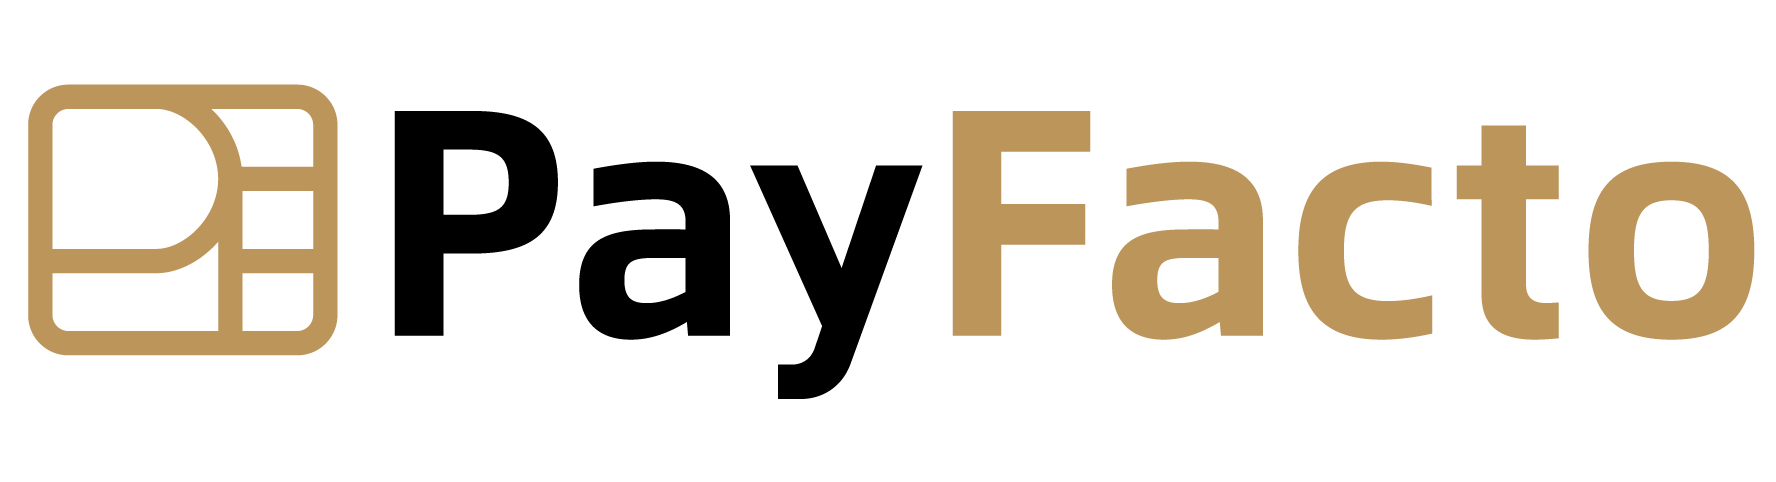 Payfacto